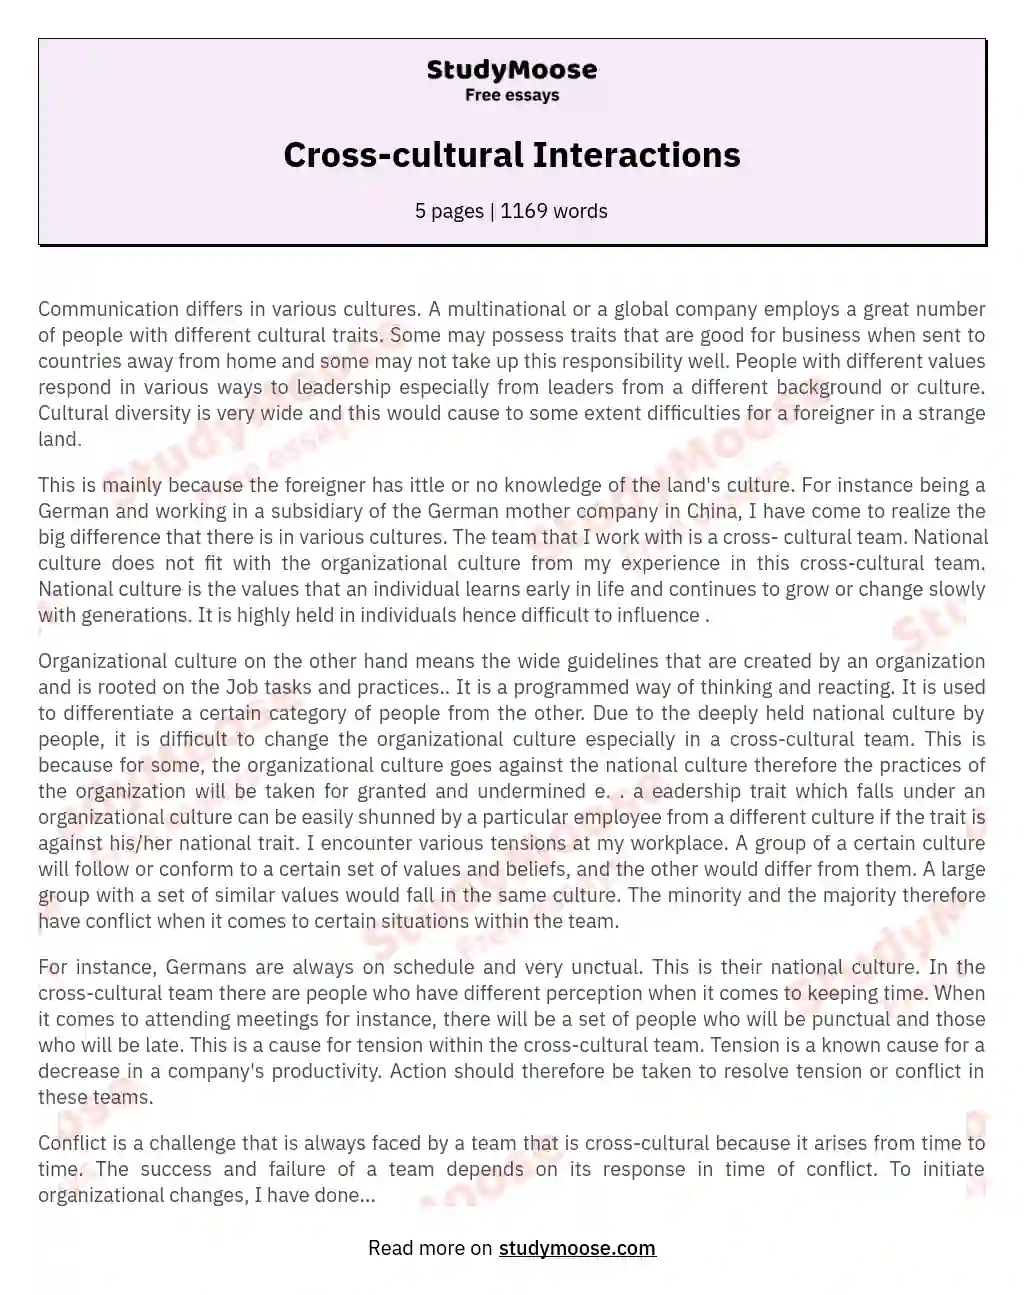 Cross-cultural Interactions essay